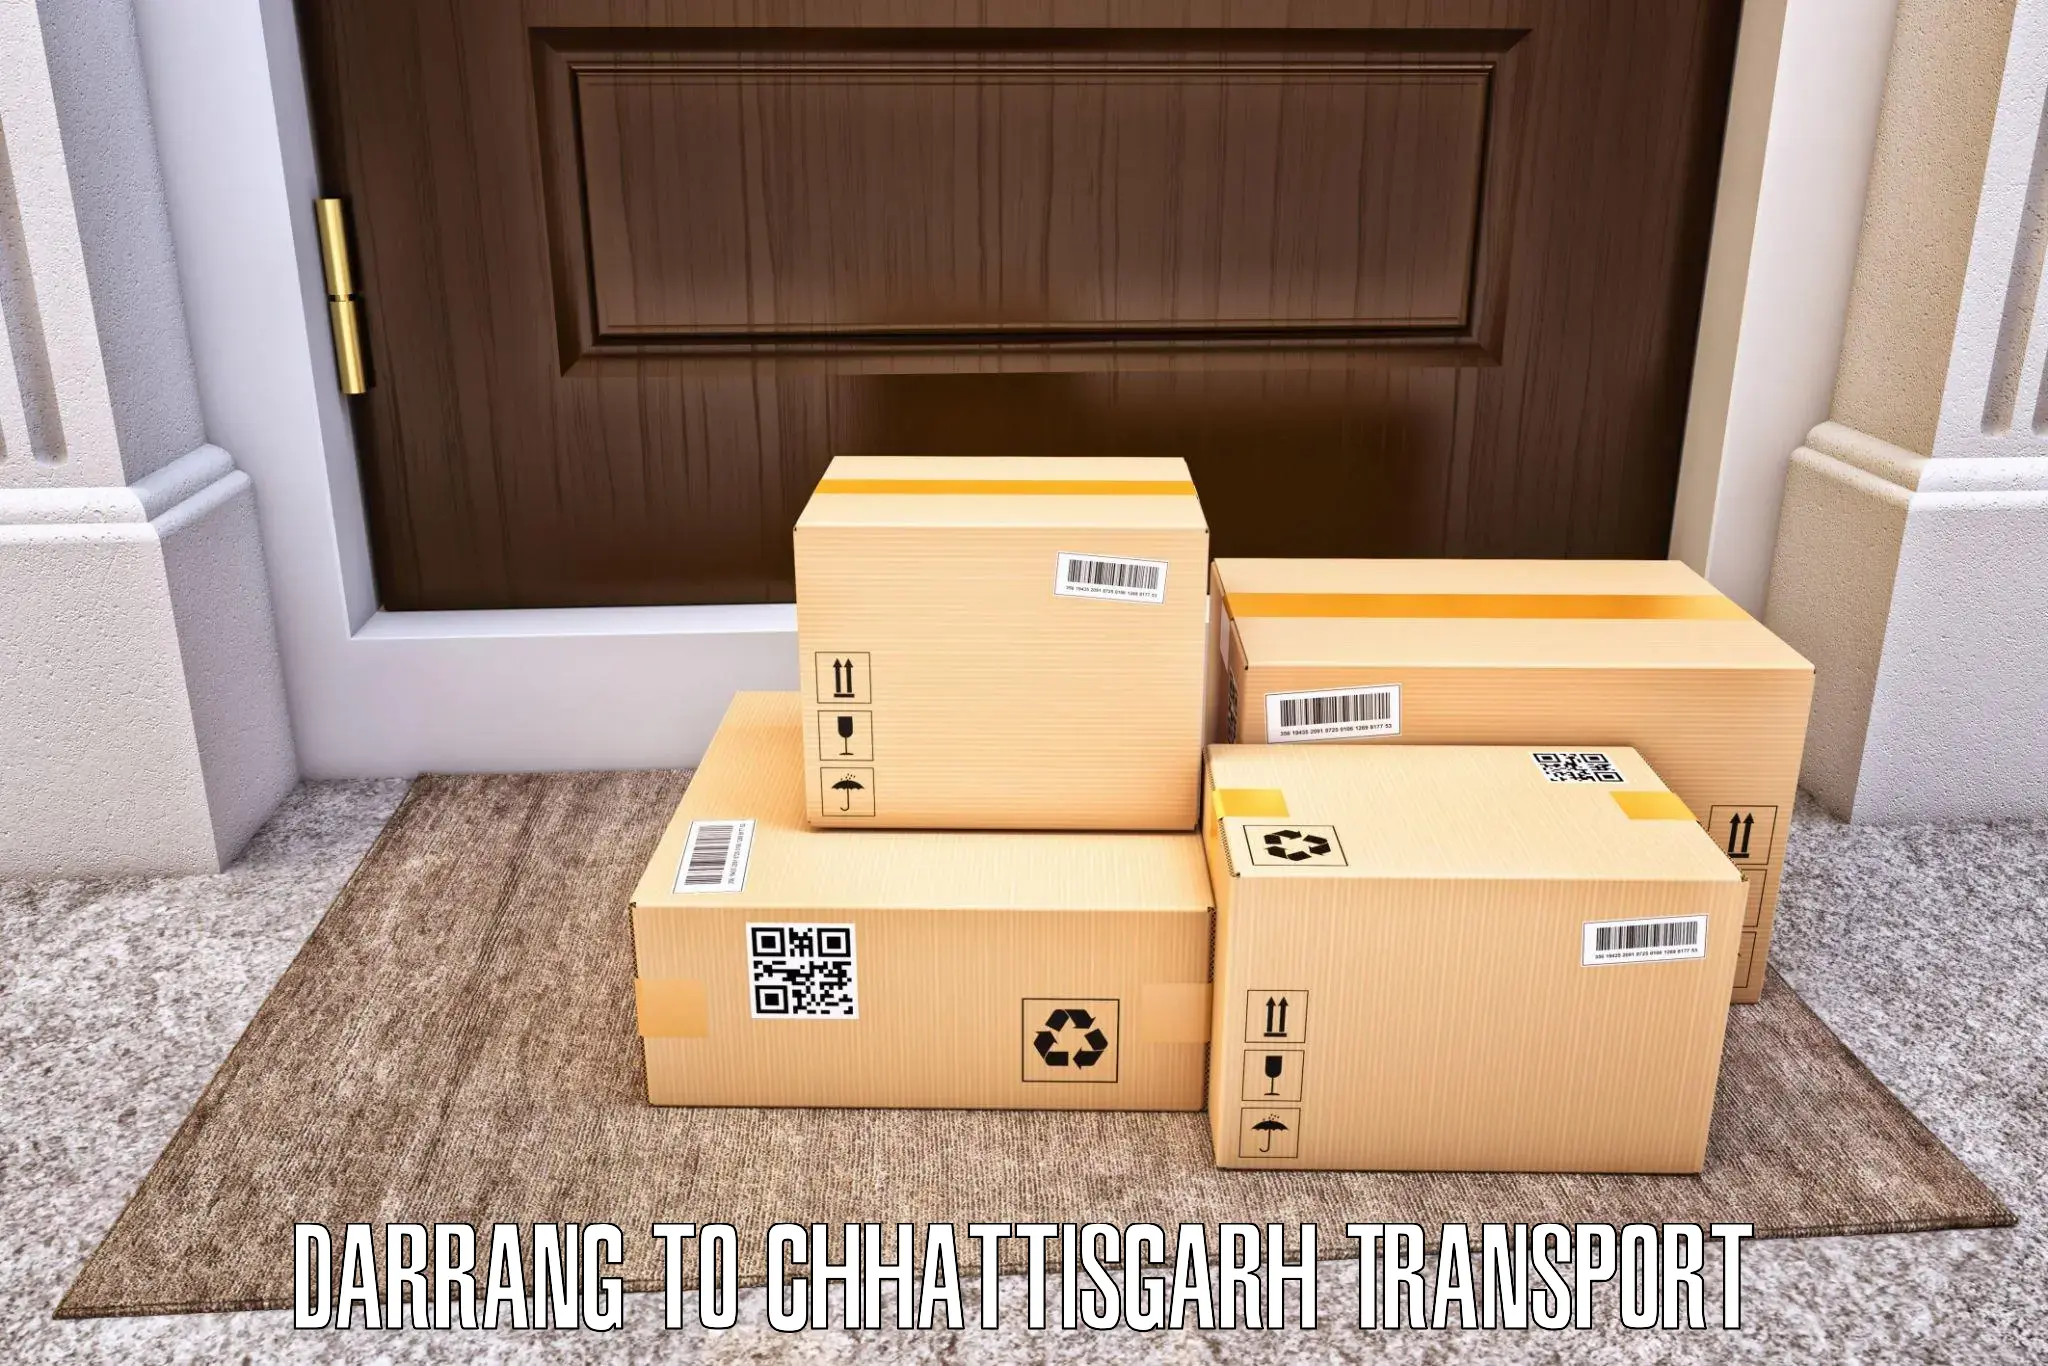 Delivery service Darrang to Patna Chhattisgarh